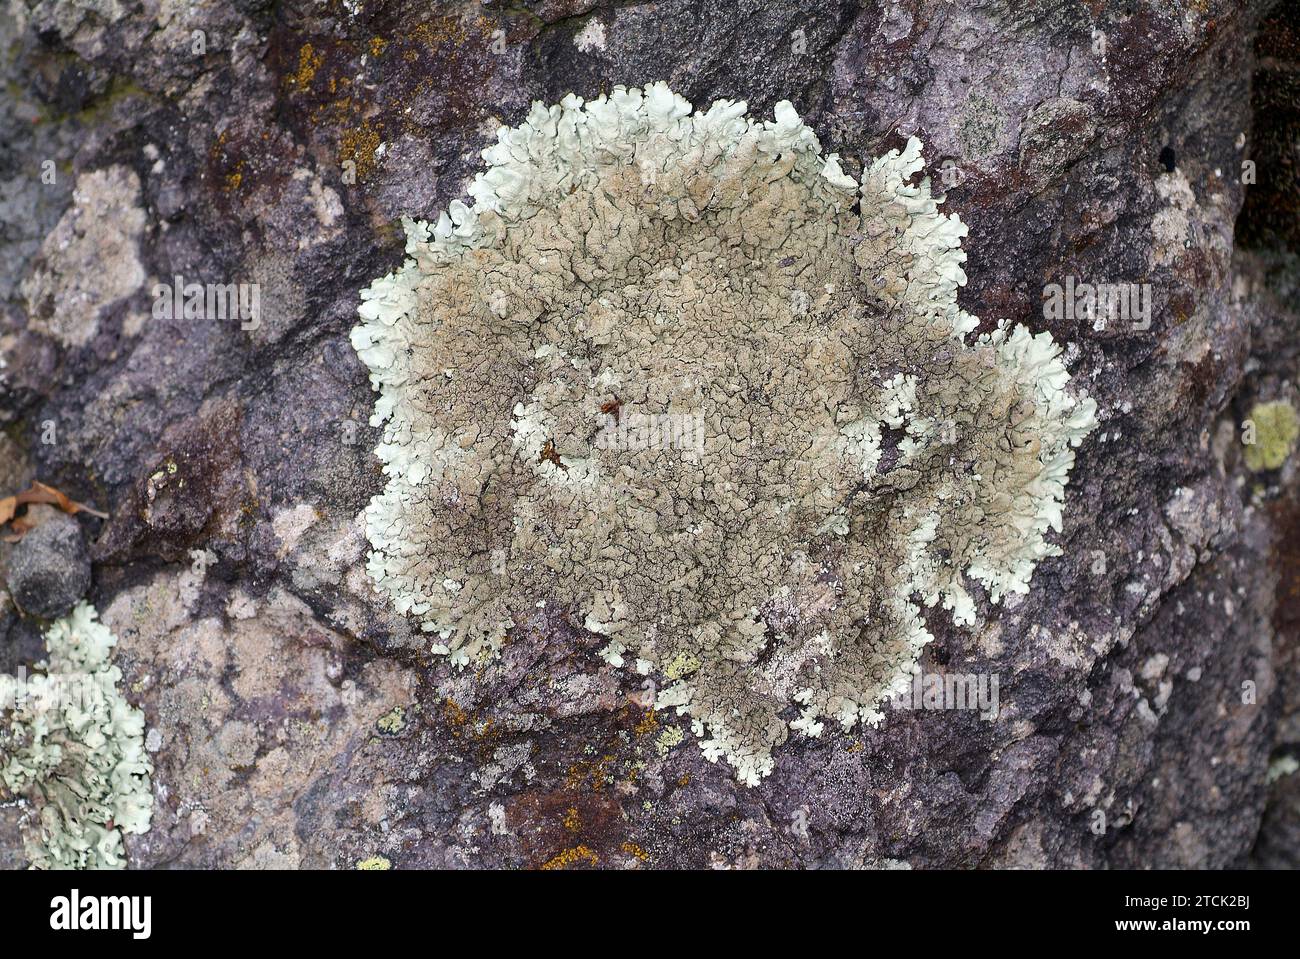 Xanthoparmelia tinctina or Parmelia tinctina is a foliose lichen that grows on siliceous rocks. Stock Photo